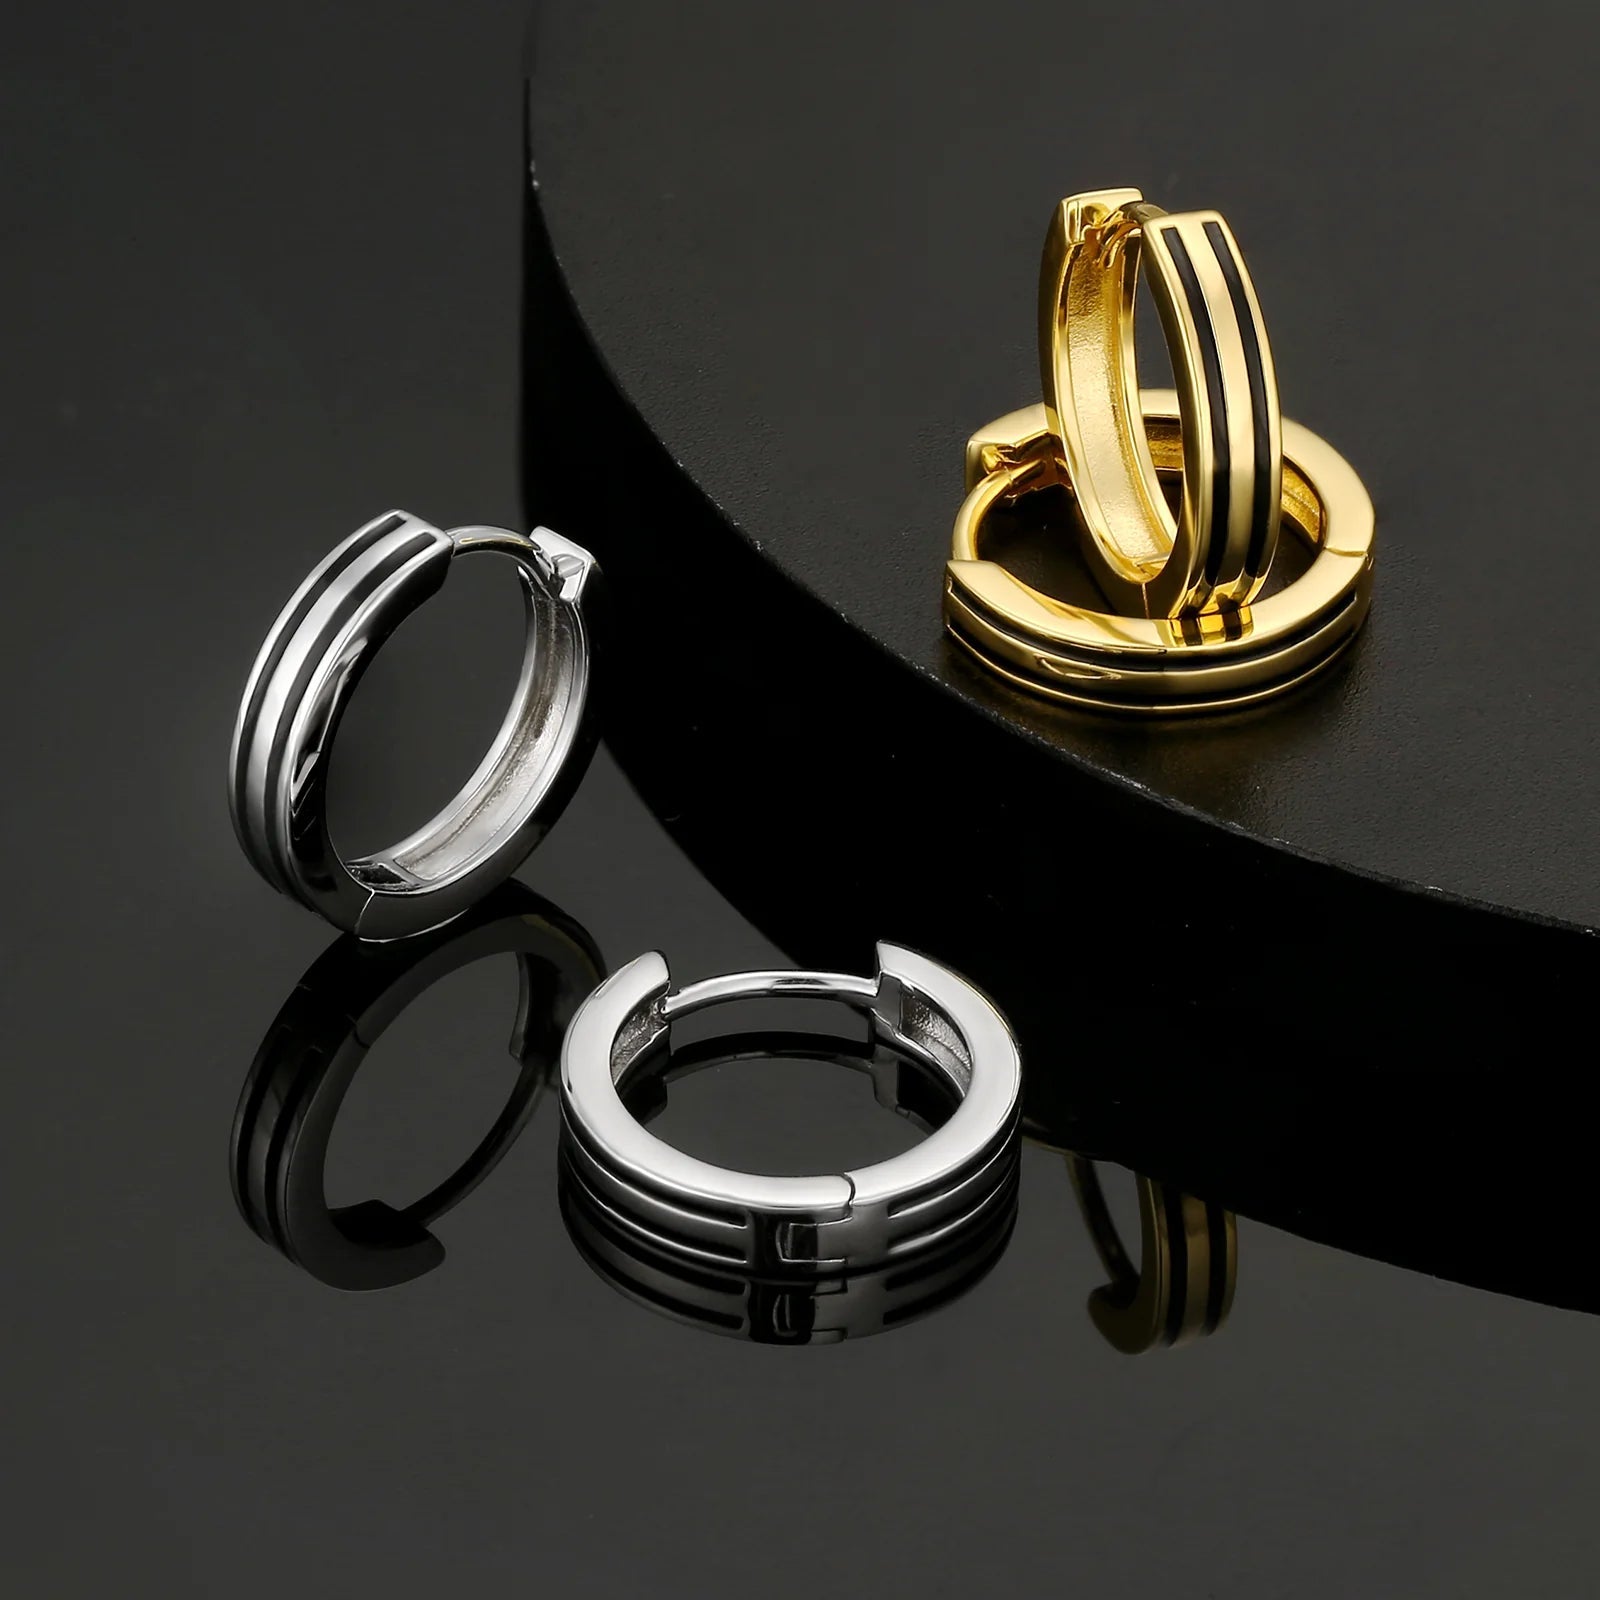 S925 Silver Black Stripe Hoop Earrings in White Gold - 15mm Earrings 